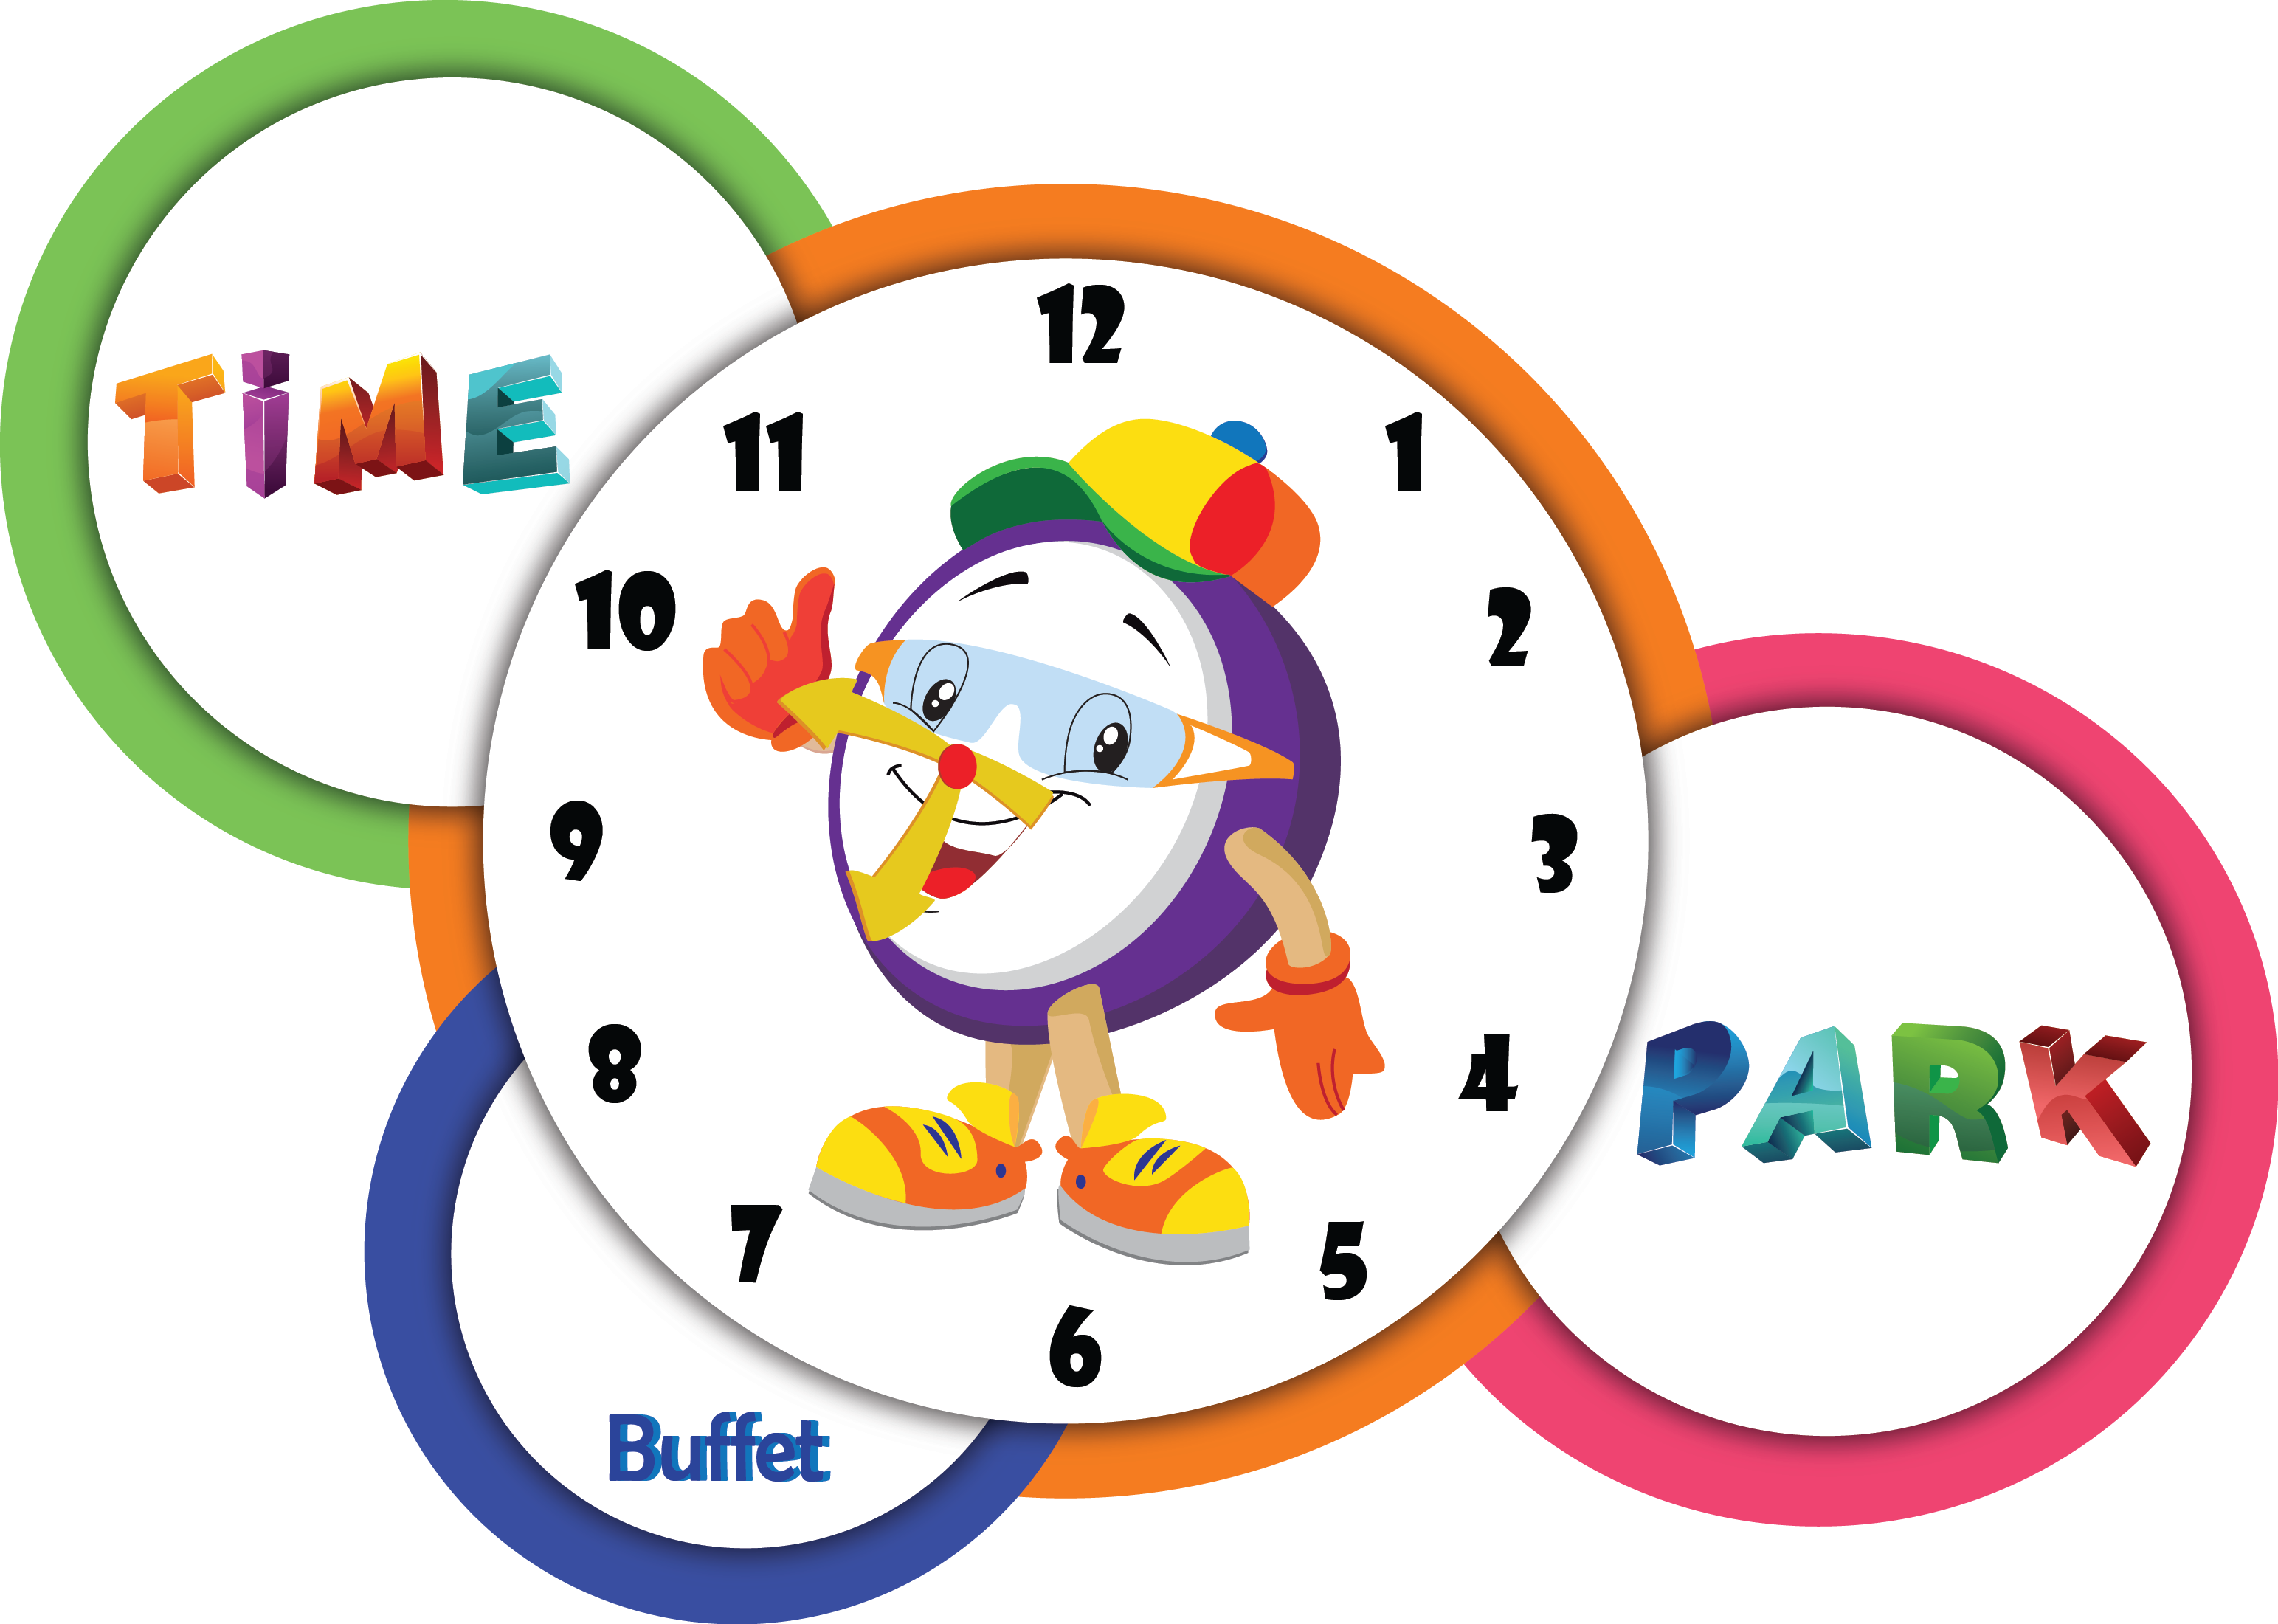 Time Park Buffet